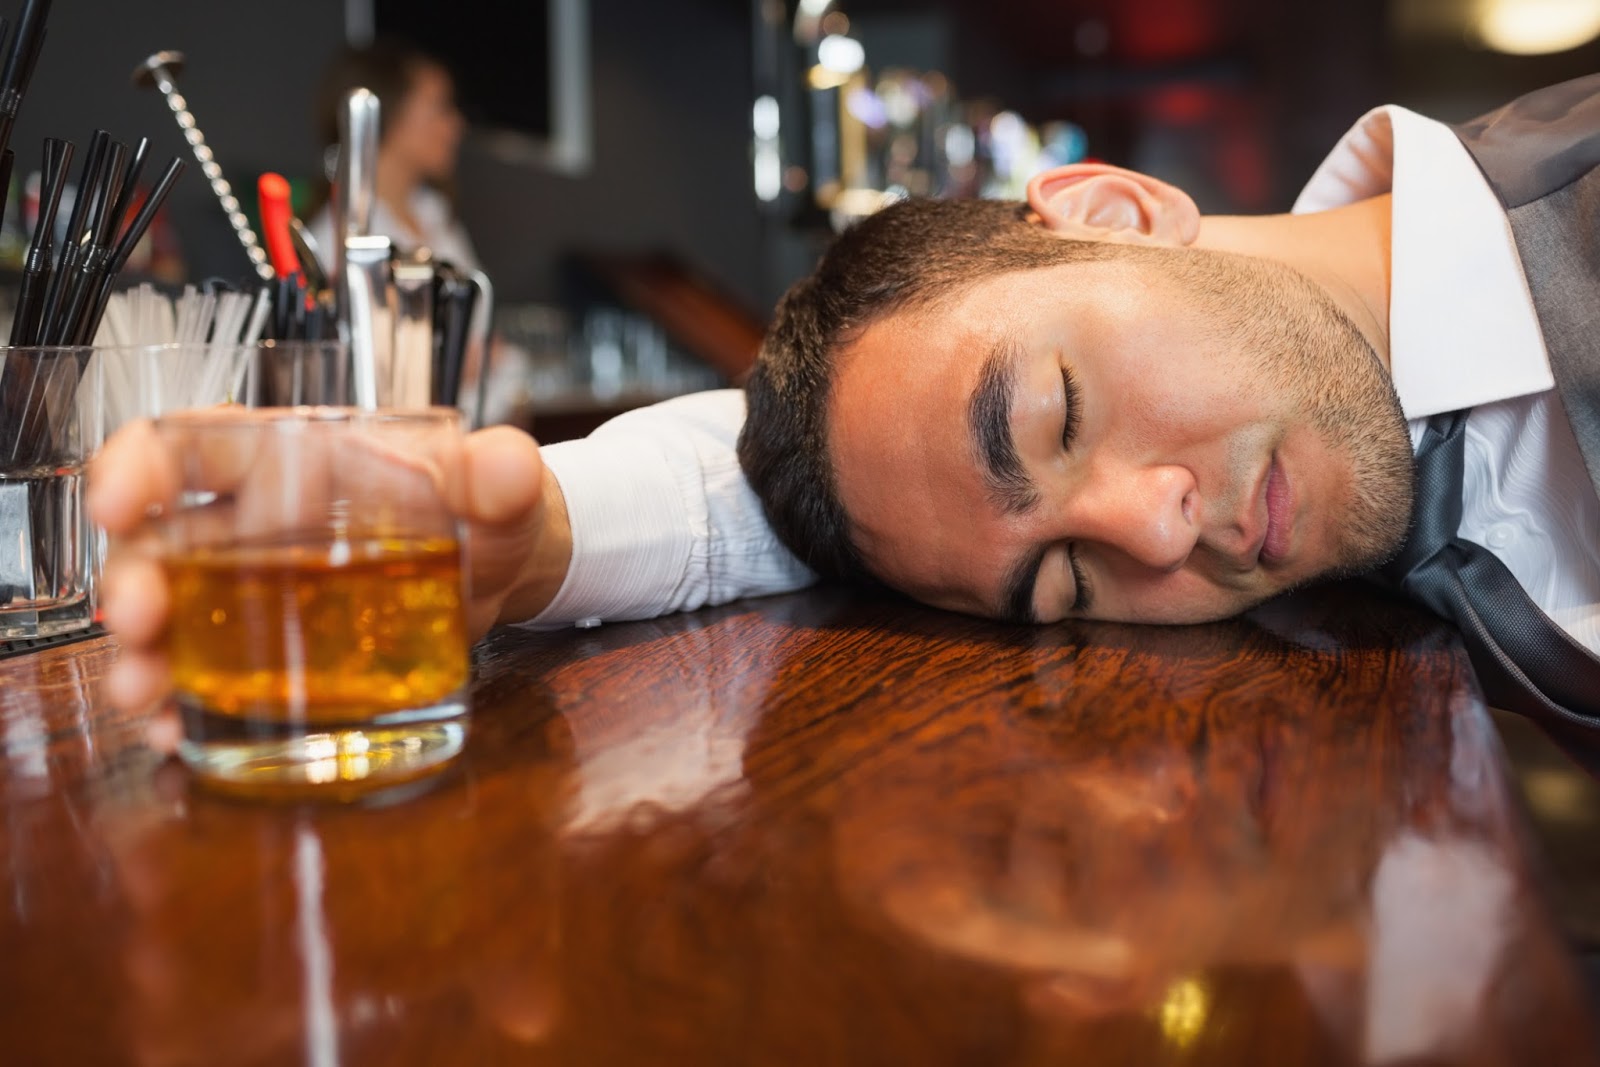 Beberapa fakta tentang hilang kesadaran yang dipicu oleh alkohol